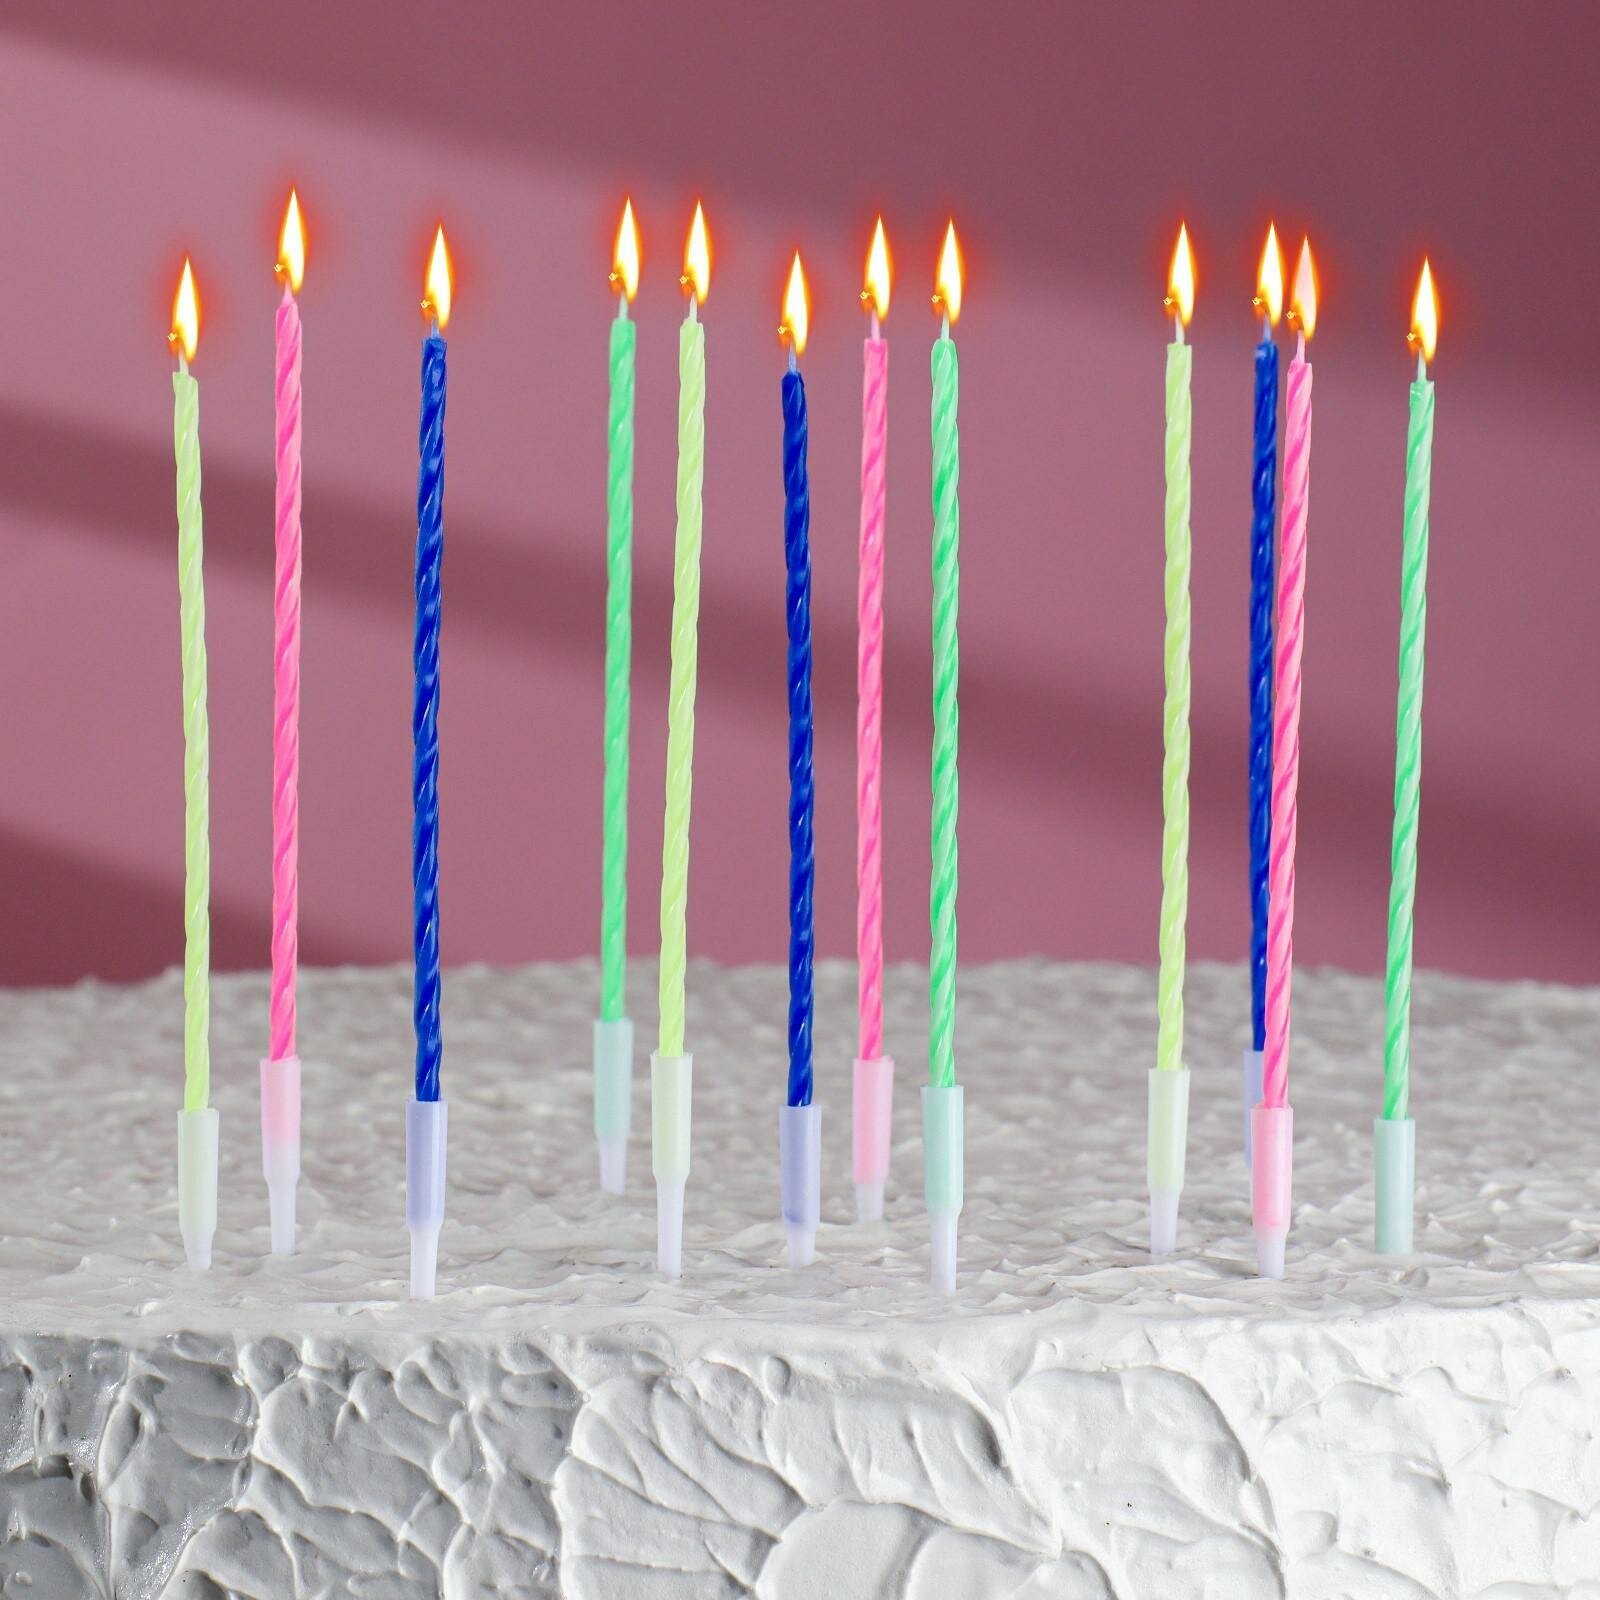 "Свечи для дня рождения" - 12 штук с подставками